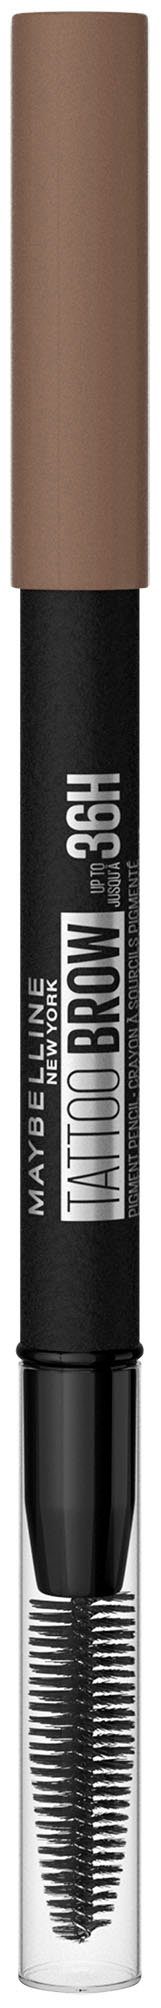 YORK mit NEW Blonde Augen-Make-Up Brow wasserfeste 36H, Tattoo Bürste, Formel, MAYBELLINE 2 Augenbrauen-Stift